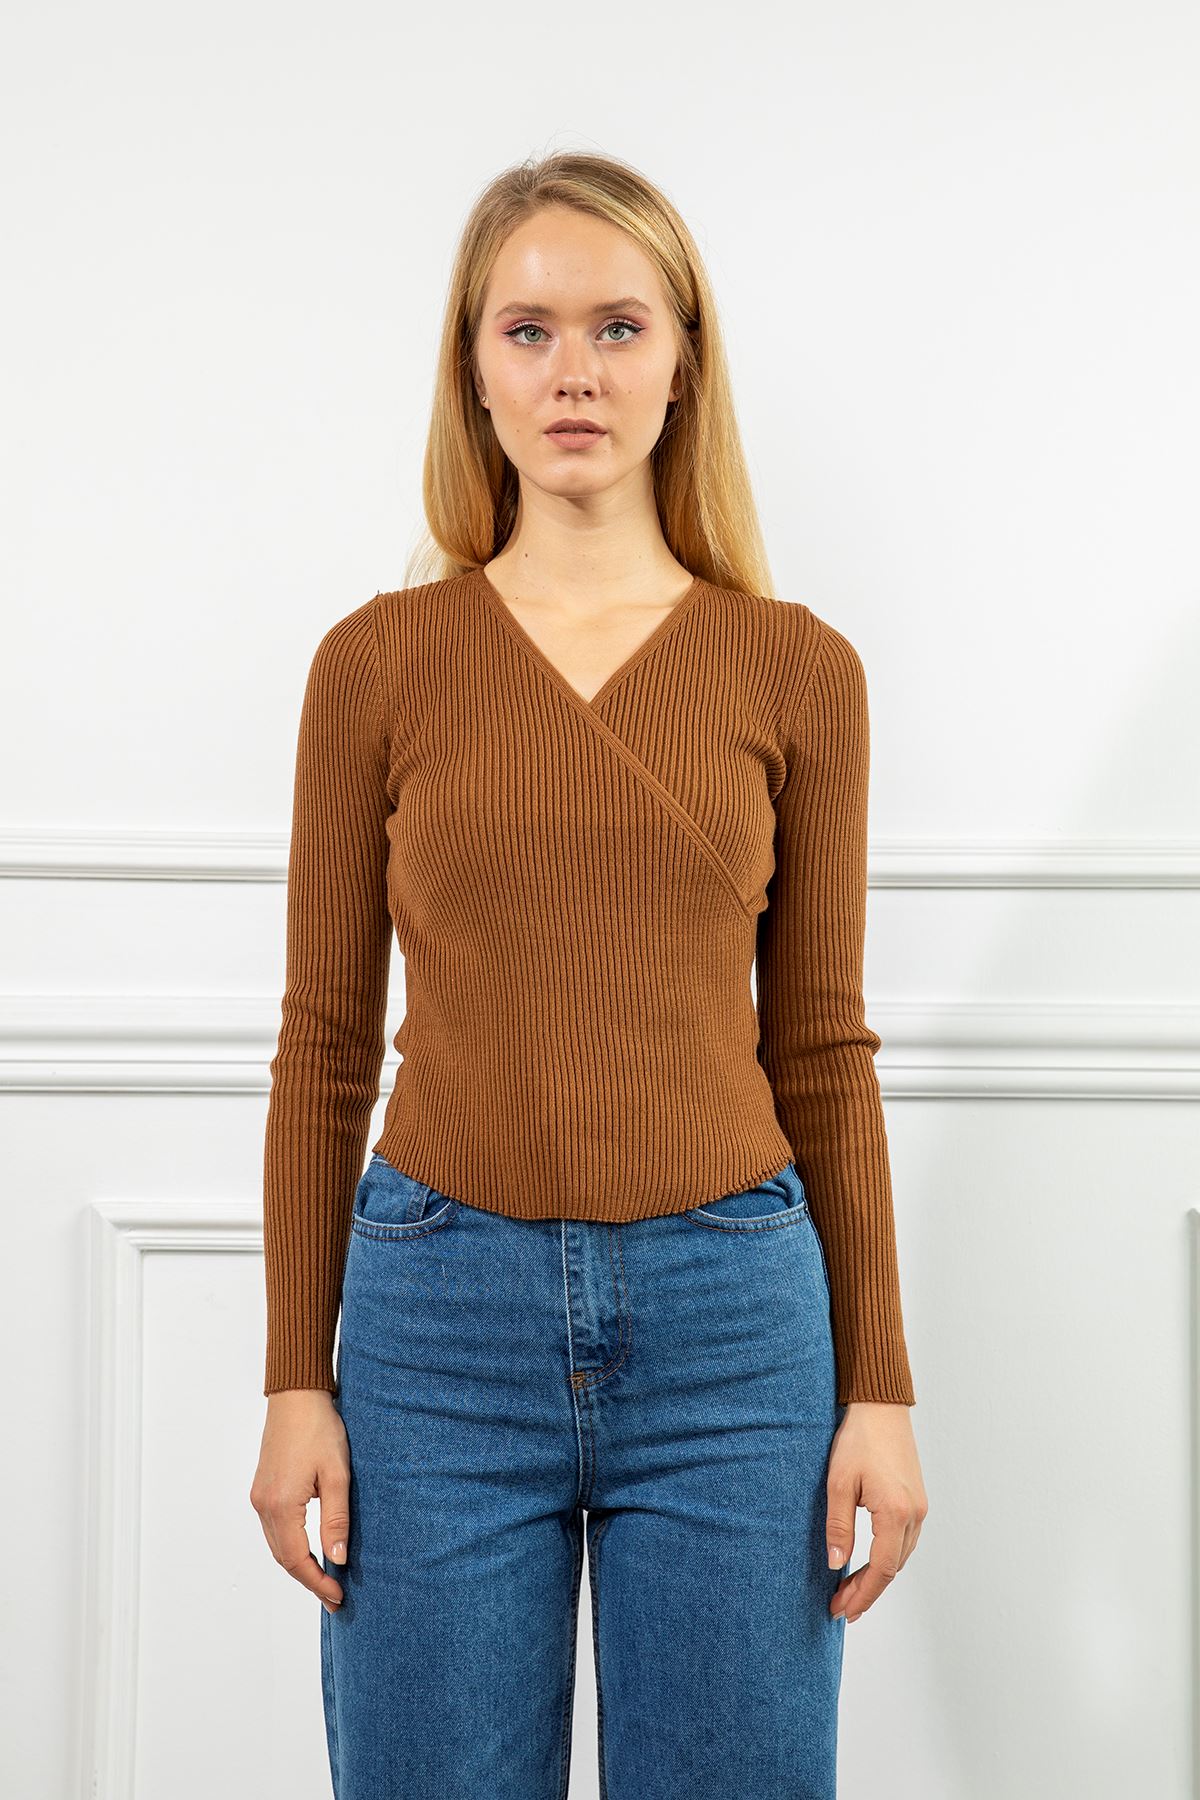 Knitwear Fabric Long Sleeve Surplice Neck Short Women Sweater - Brown